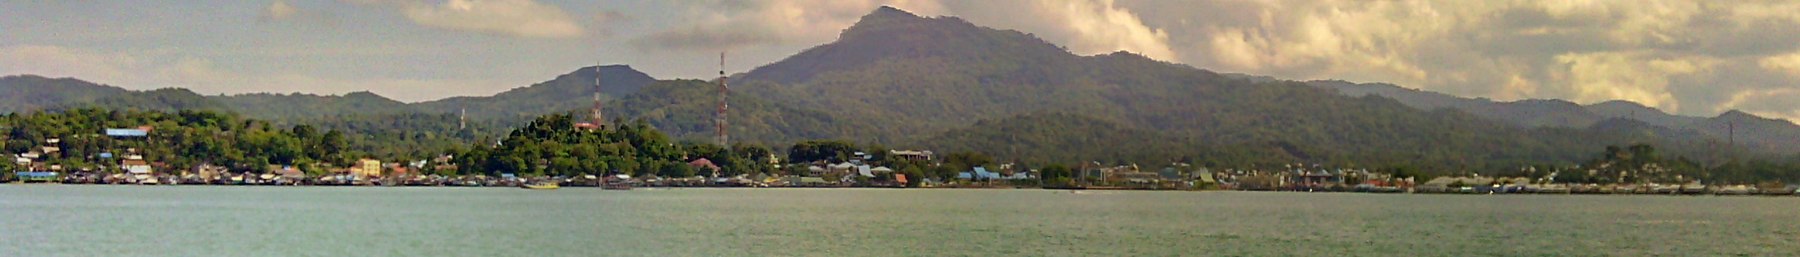 Kotabaru, Kalimantan Selatan